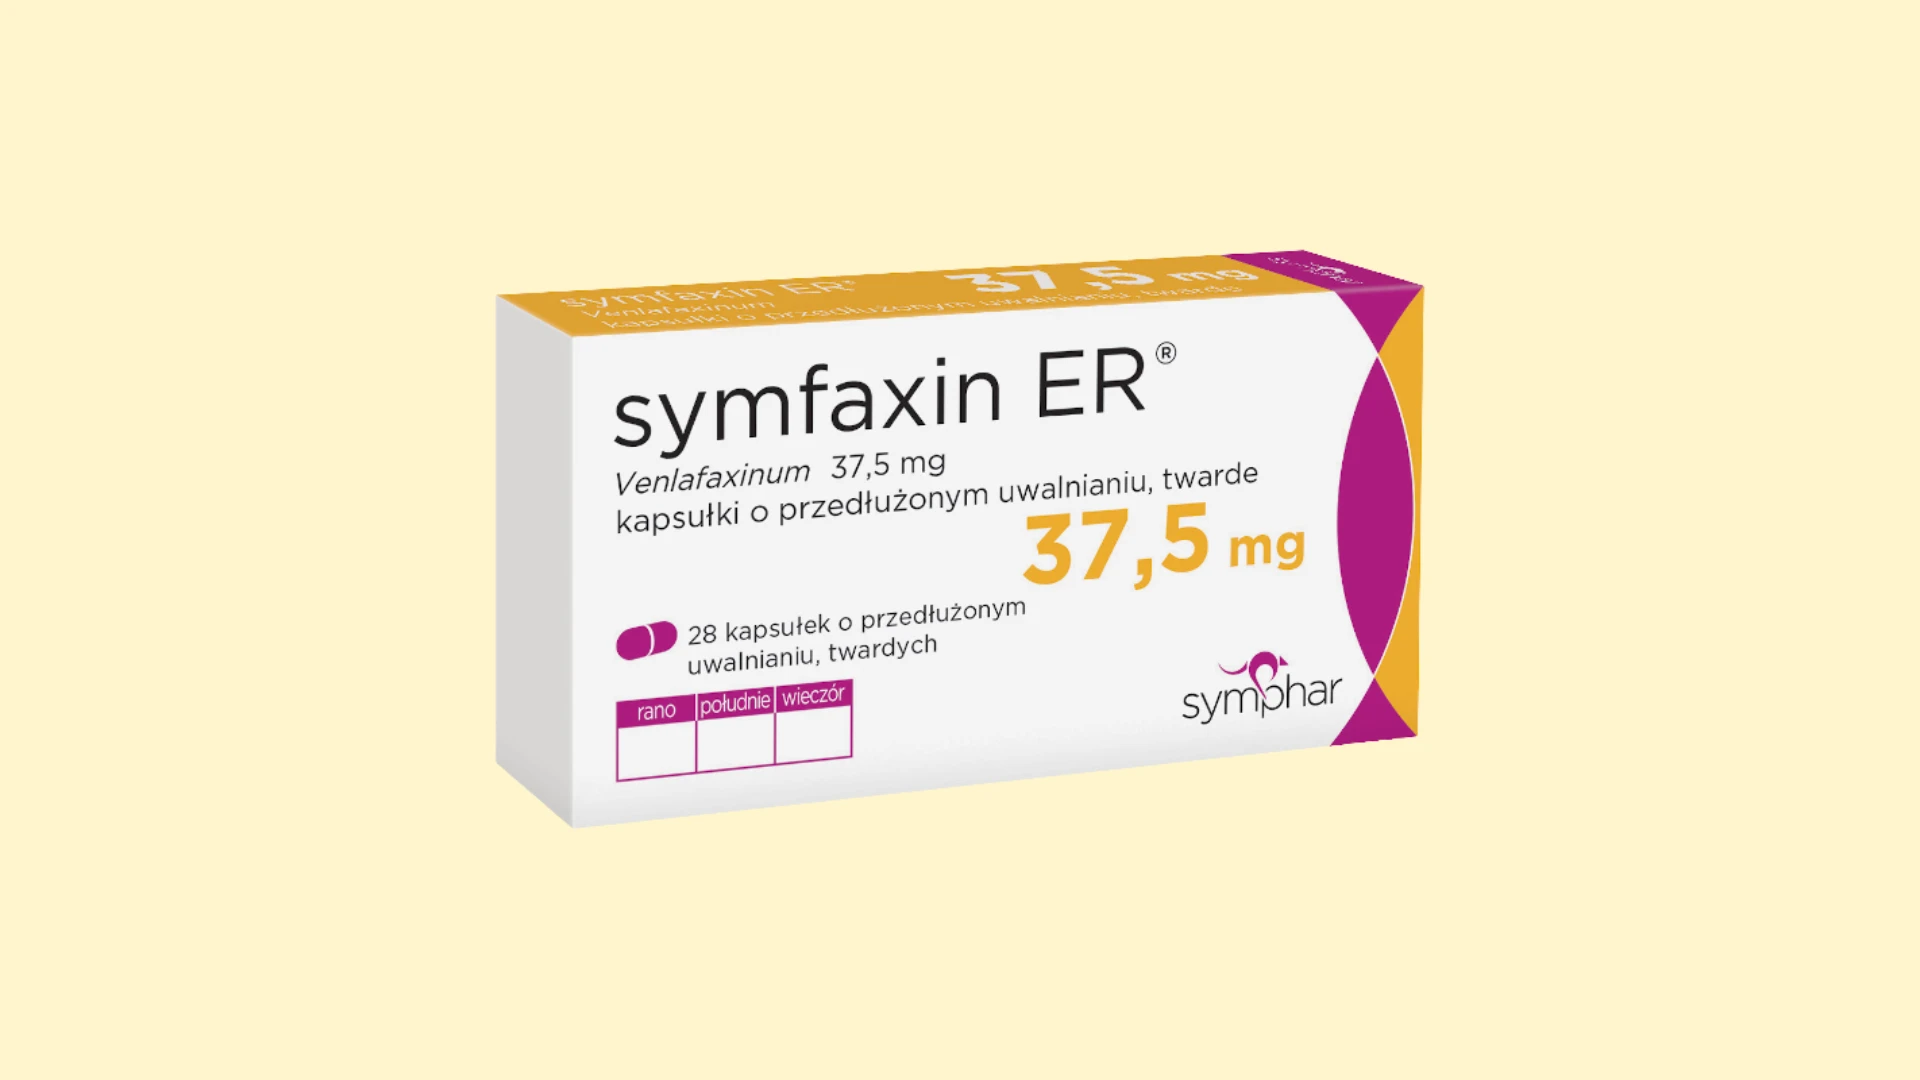 Symfaxin ER - Recepta online - e-Recepta z konsultacją | cena, dawkowanie, przeciwwskazania